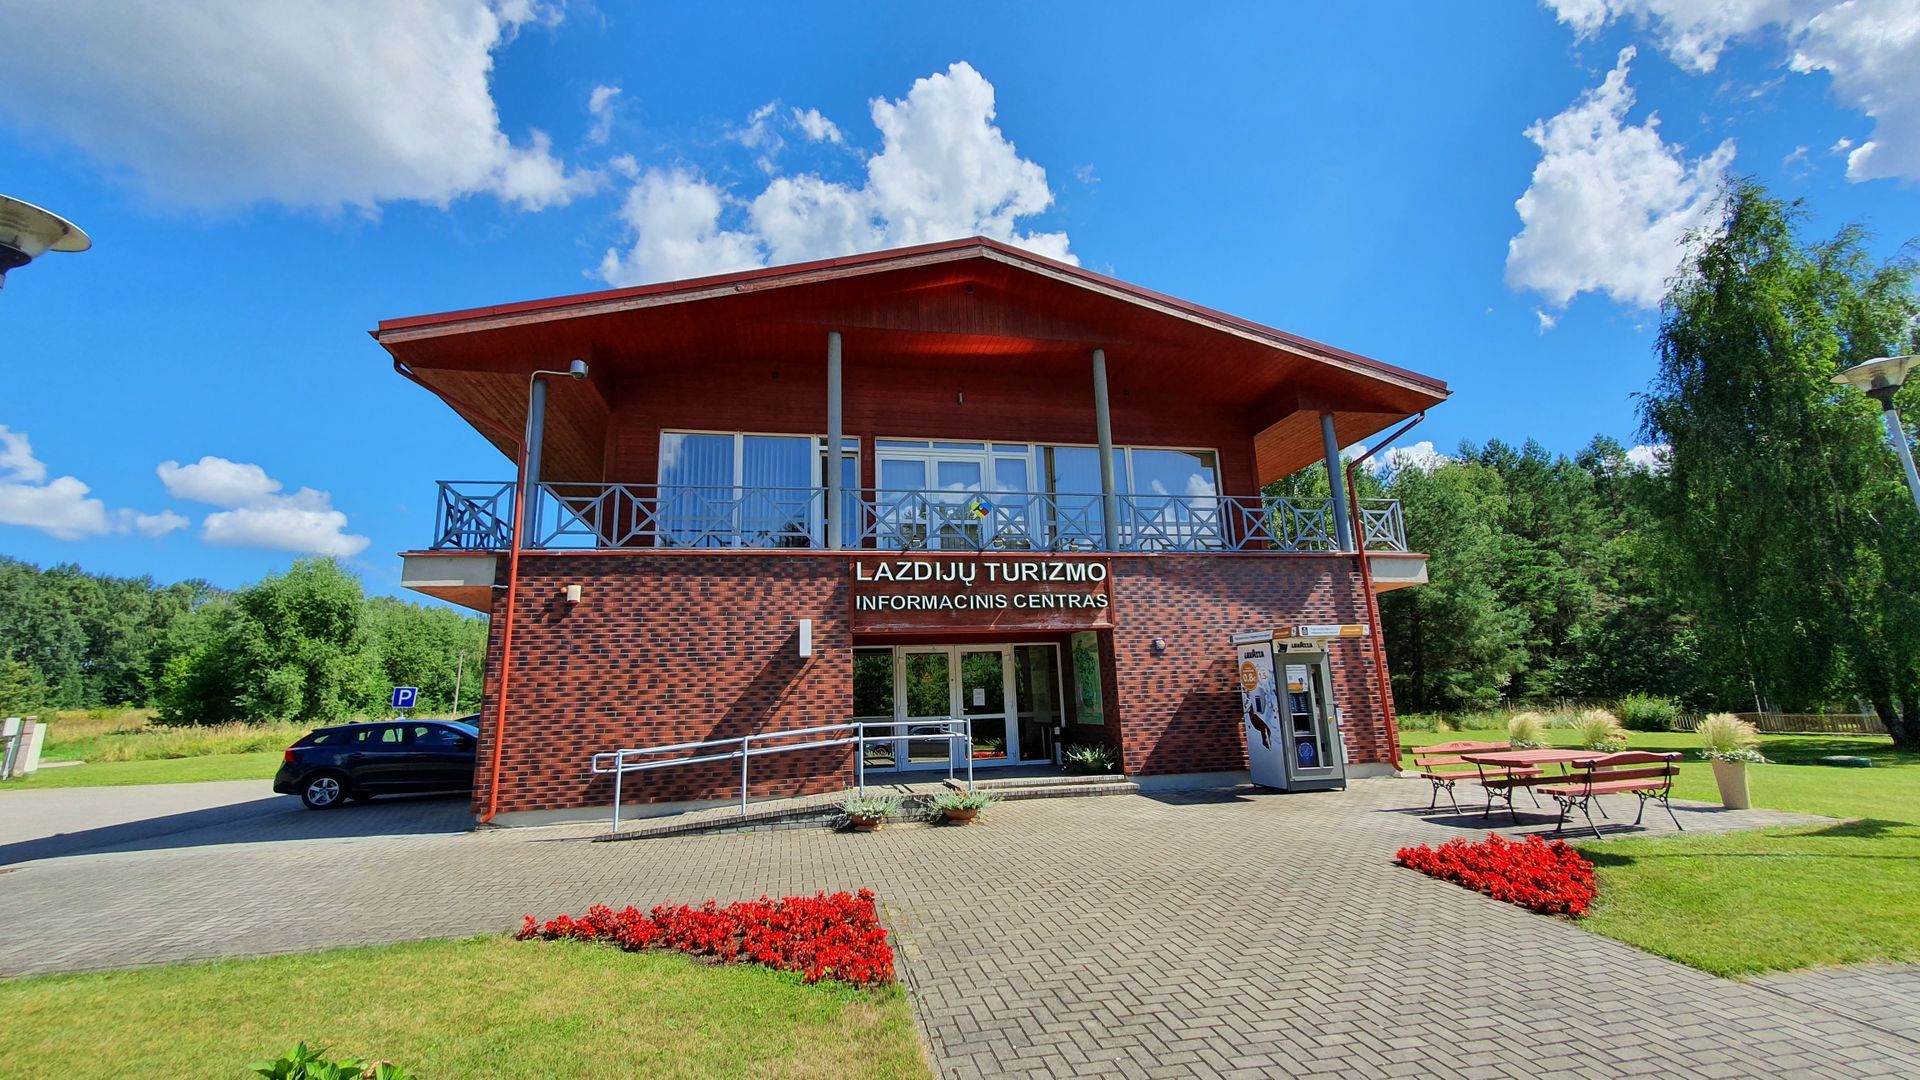 Lazdijų turizmo informacinis centras (Janaslavas)